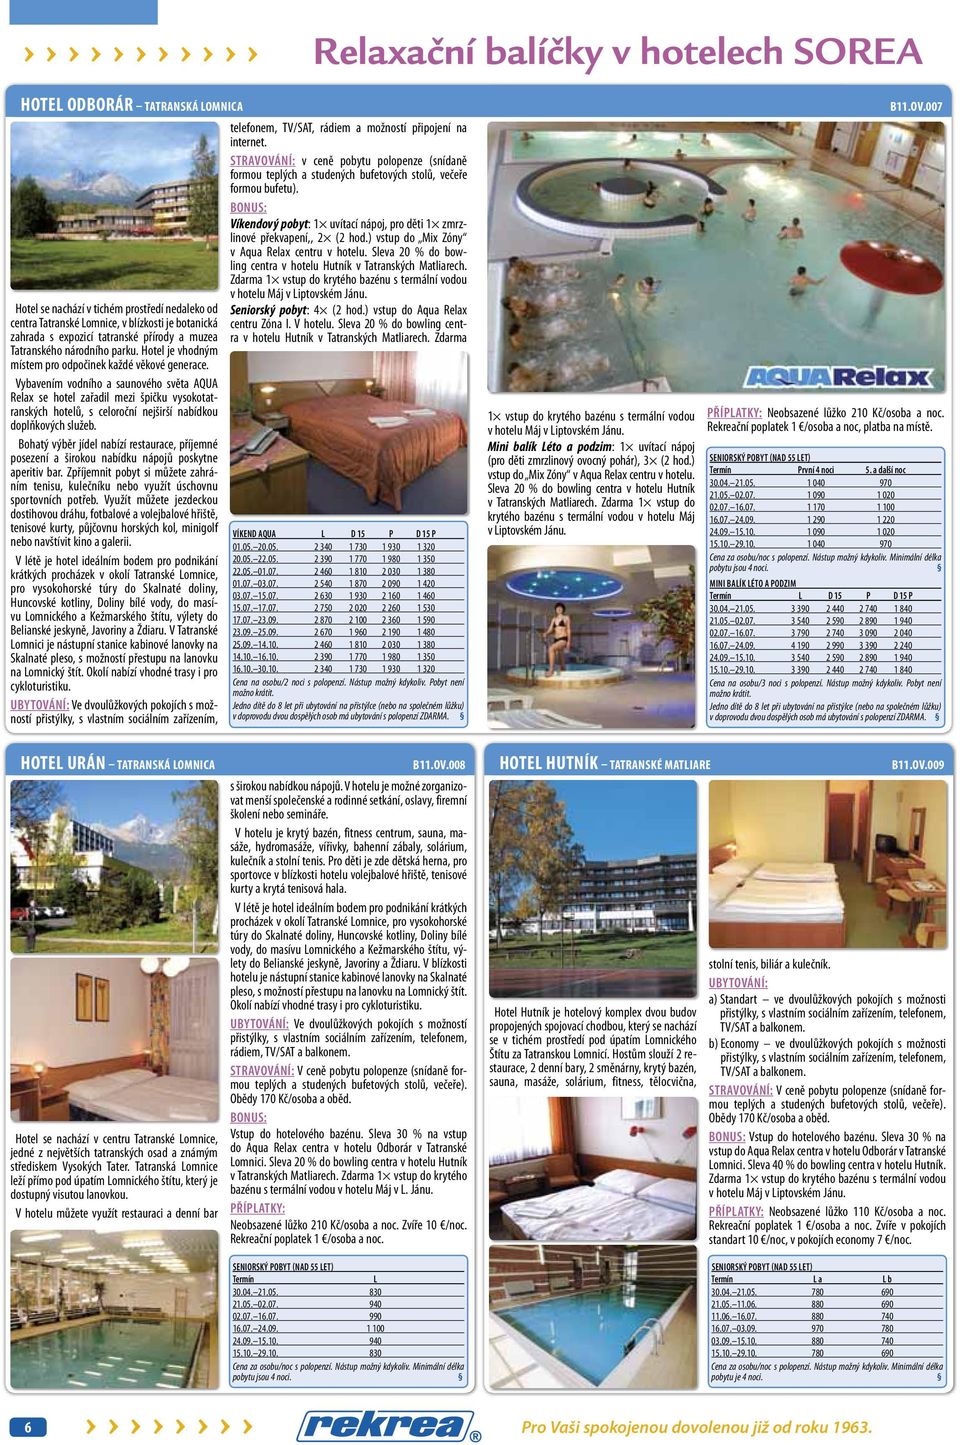 Vybavením vodního a saunového světa AQUA Relax se hotel zařadil mezi špičku vysokotatranských hotelů, s celoroční nejširší nabídkou doplňkových služeb.